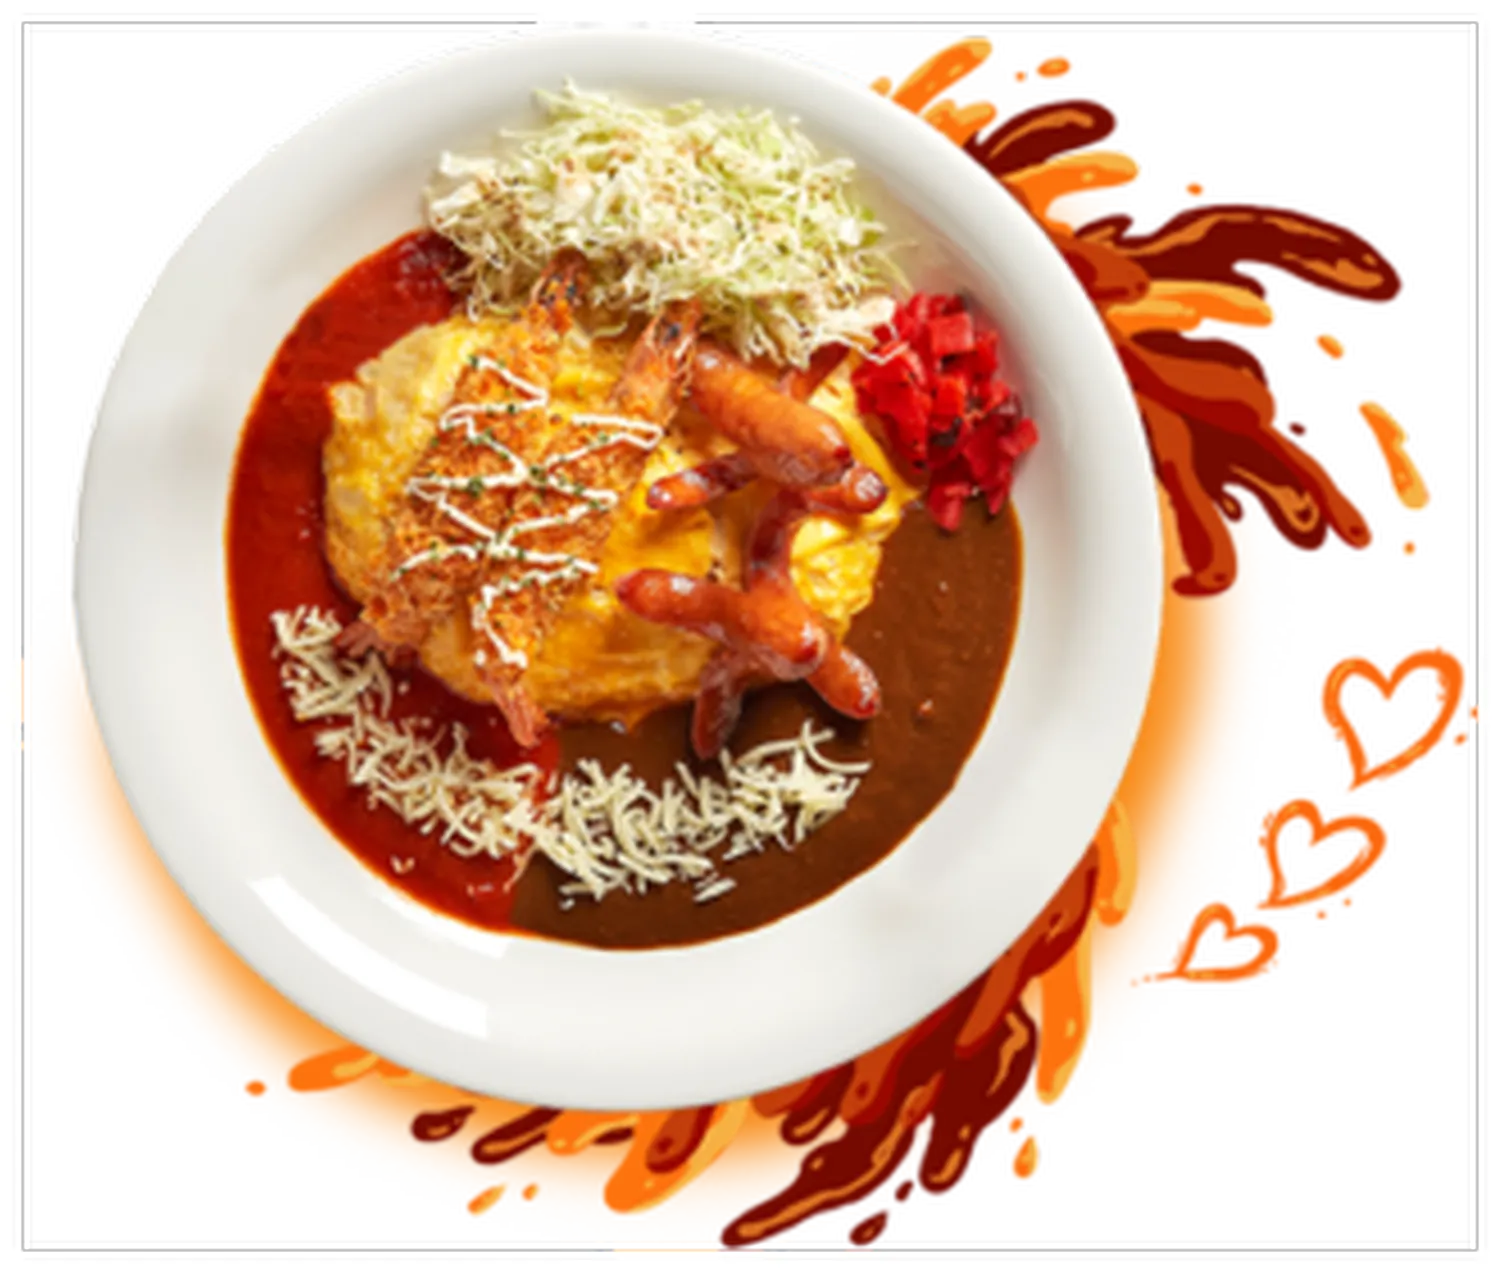 monster curry menu singapore jumbo ebi curry